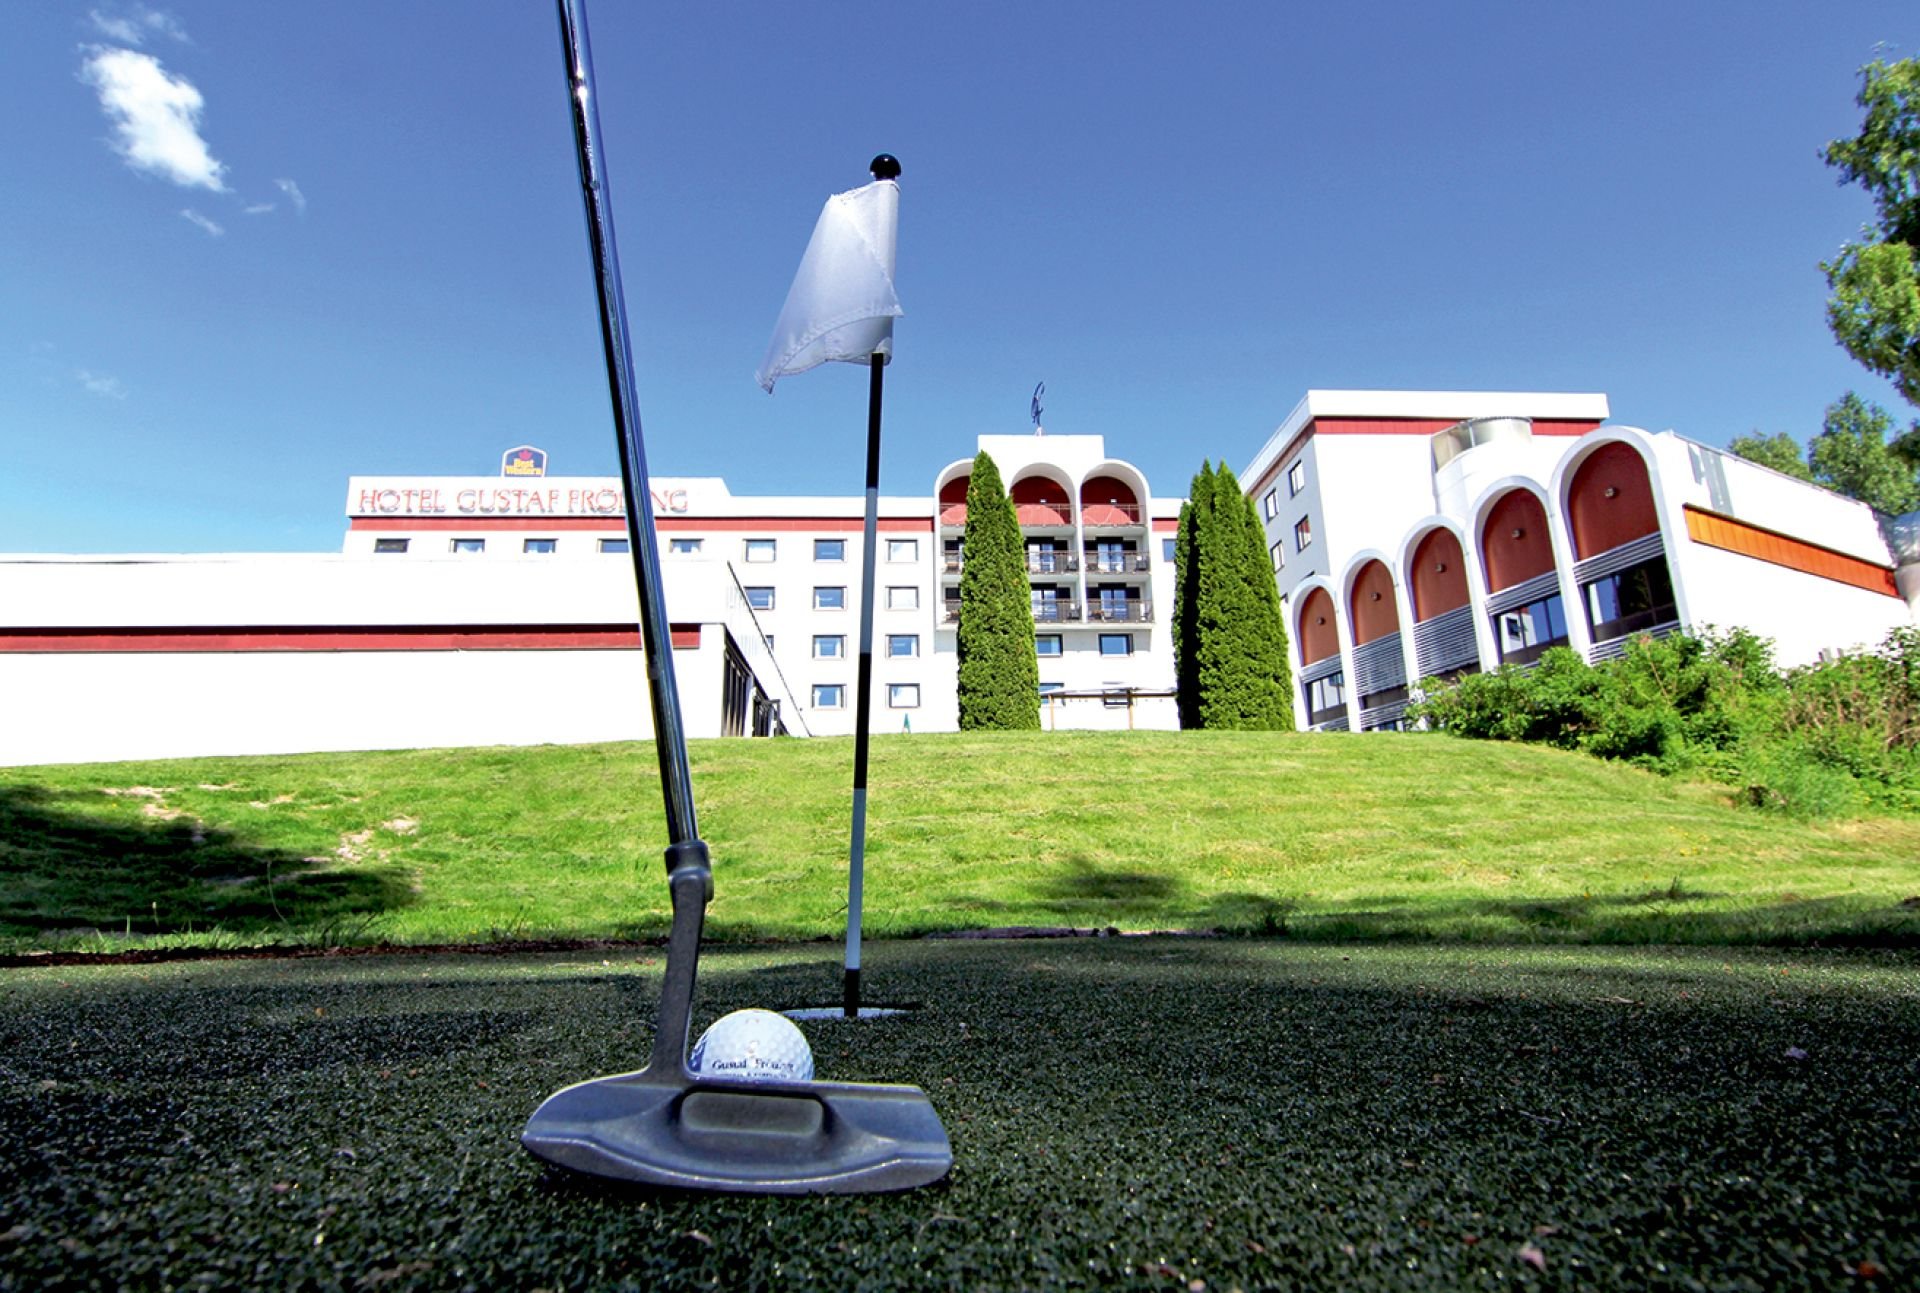 Golfbana framför hotellet.